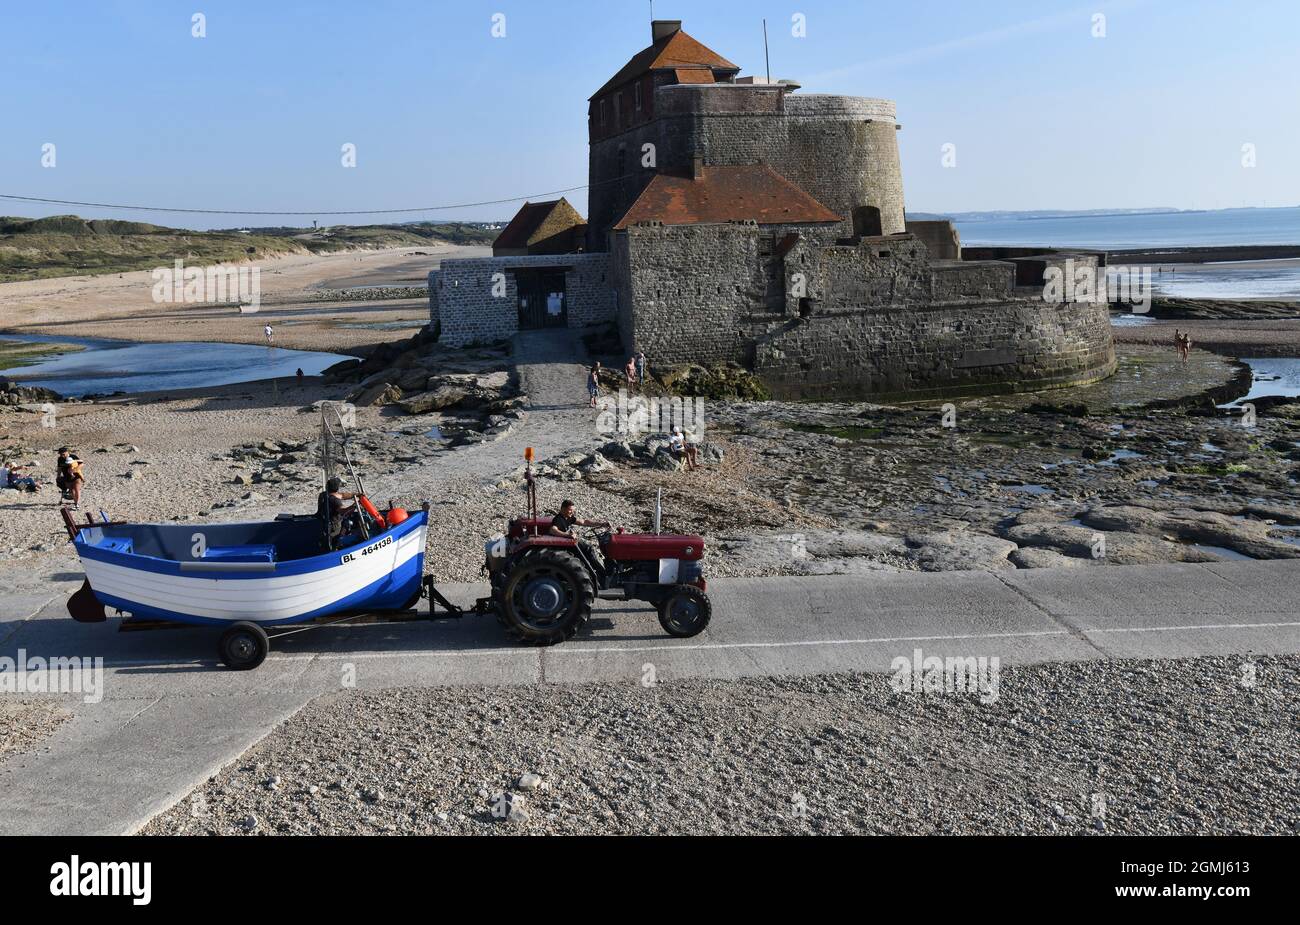 Trattore Fishermans sulla spiaggia di Ambleteuse, Francia settentrionale. Fort d' Ambleteuse chiamato anche Forte Vauban o Fort Mahon situato sulla costa nel P. Foto Stock